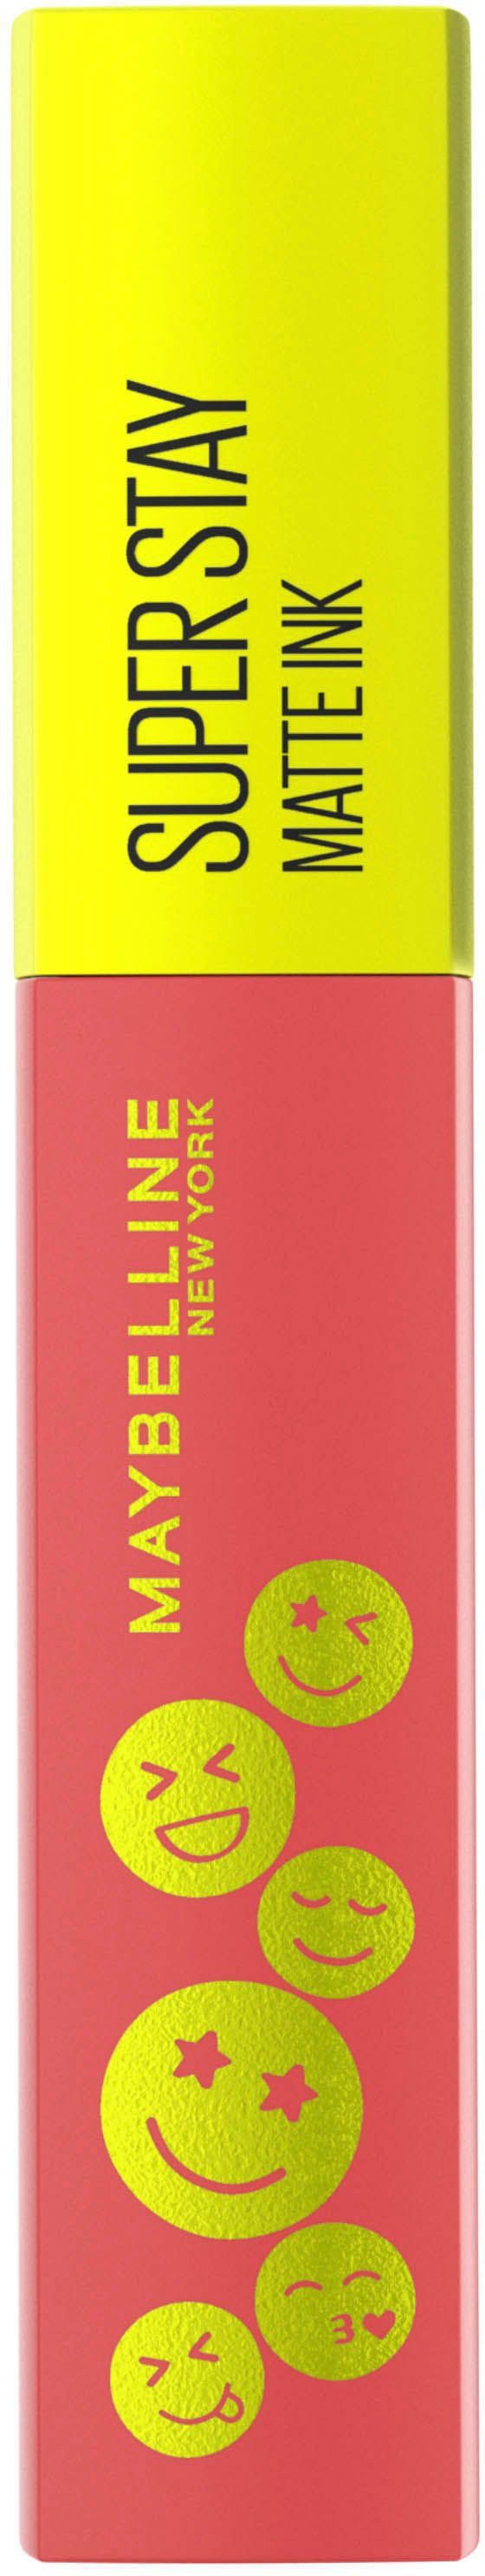 Matte York YORK NEW MAYBELLINE Stay Lippenstift Maybelline Ink Lippenstift Super New